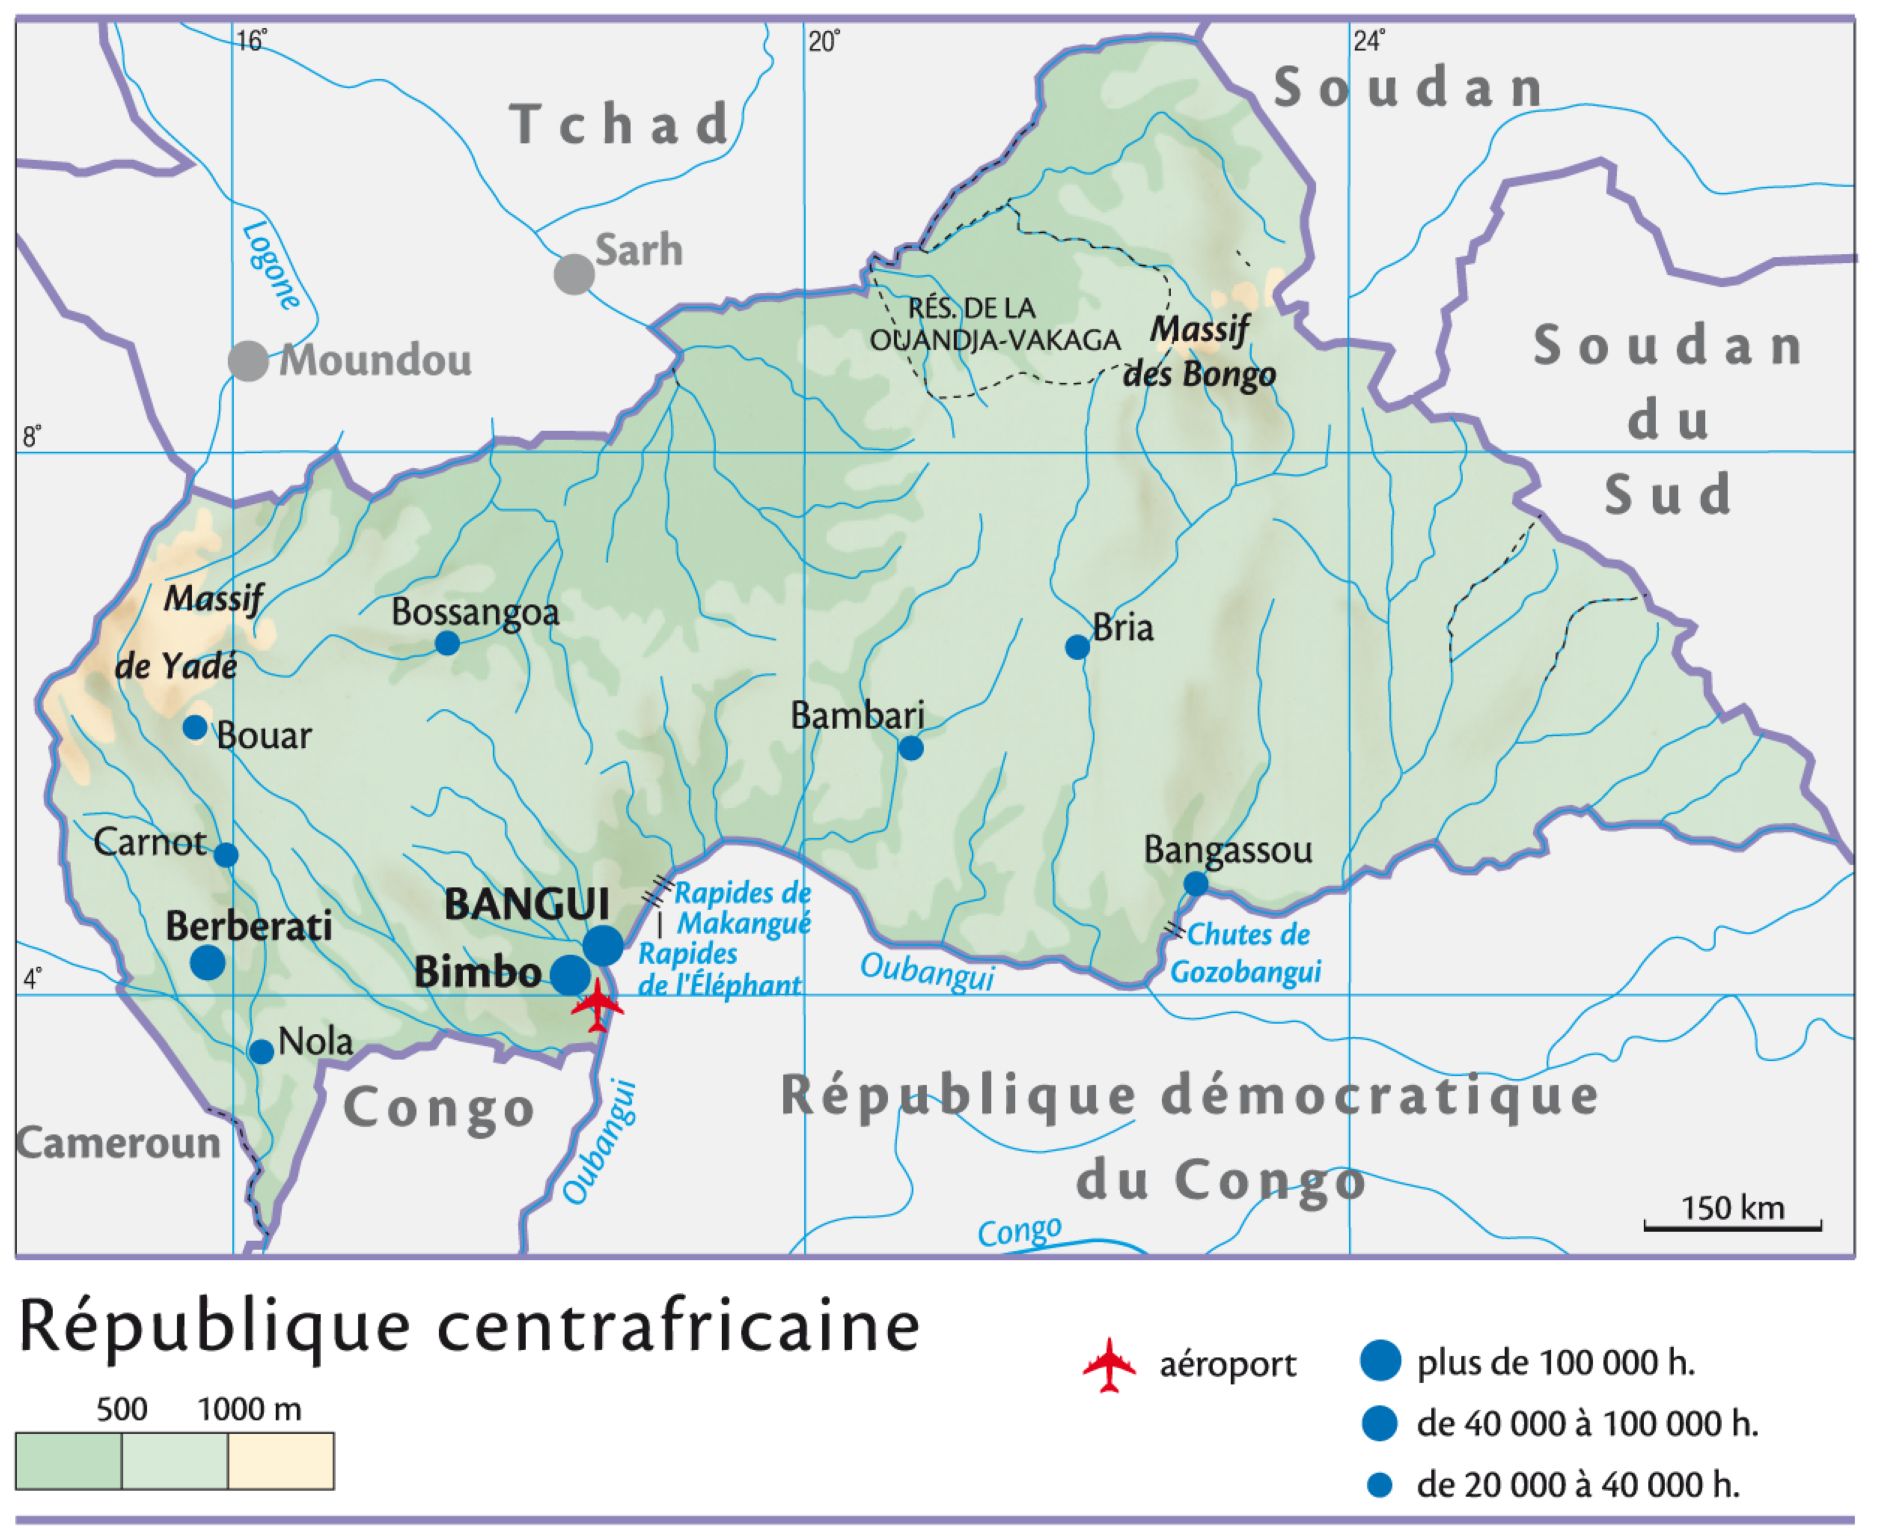 Centrafricaine (République)